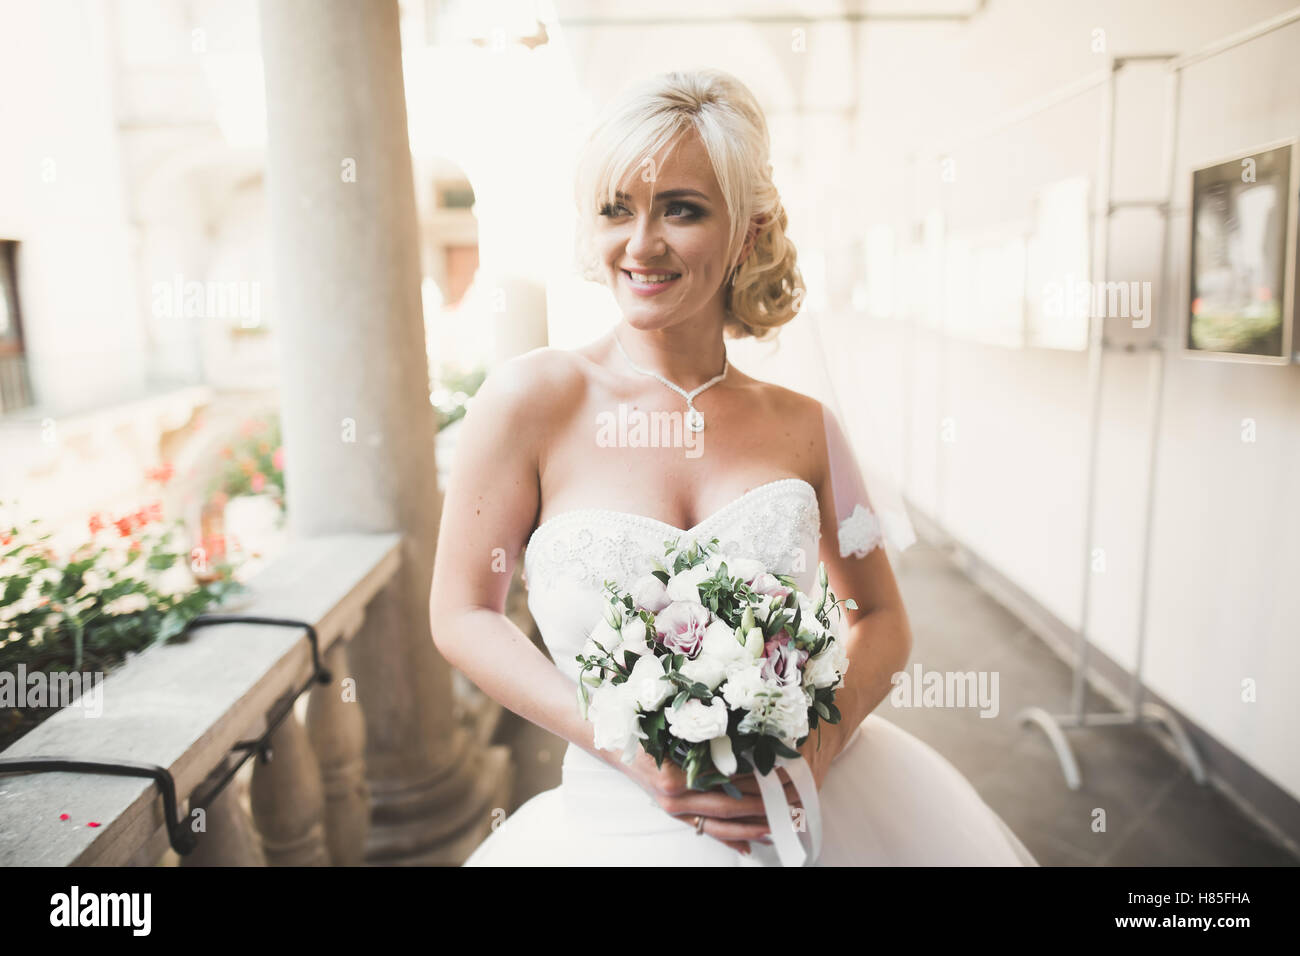 Mariée magnifique avec une luxueuse robe blanche posant dans la vieille ville Banque D'Images